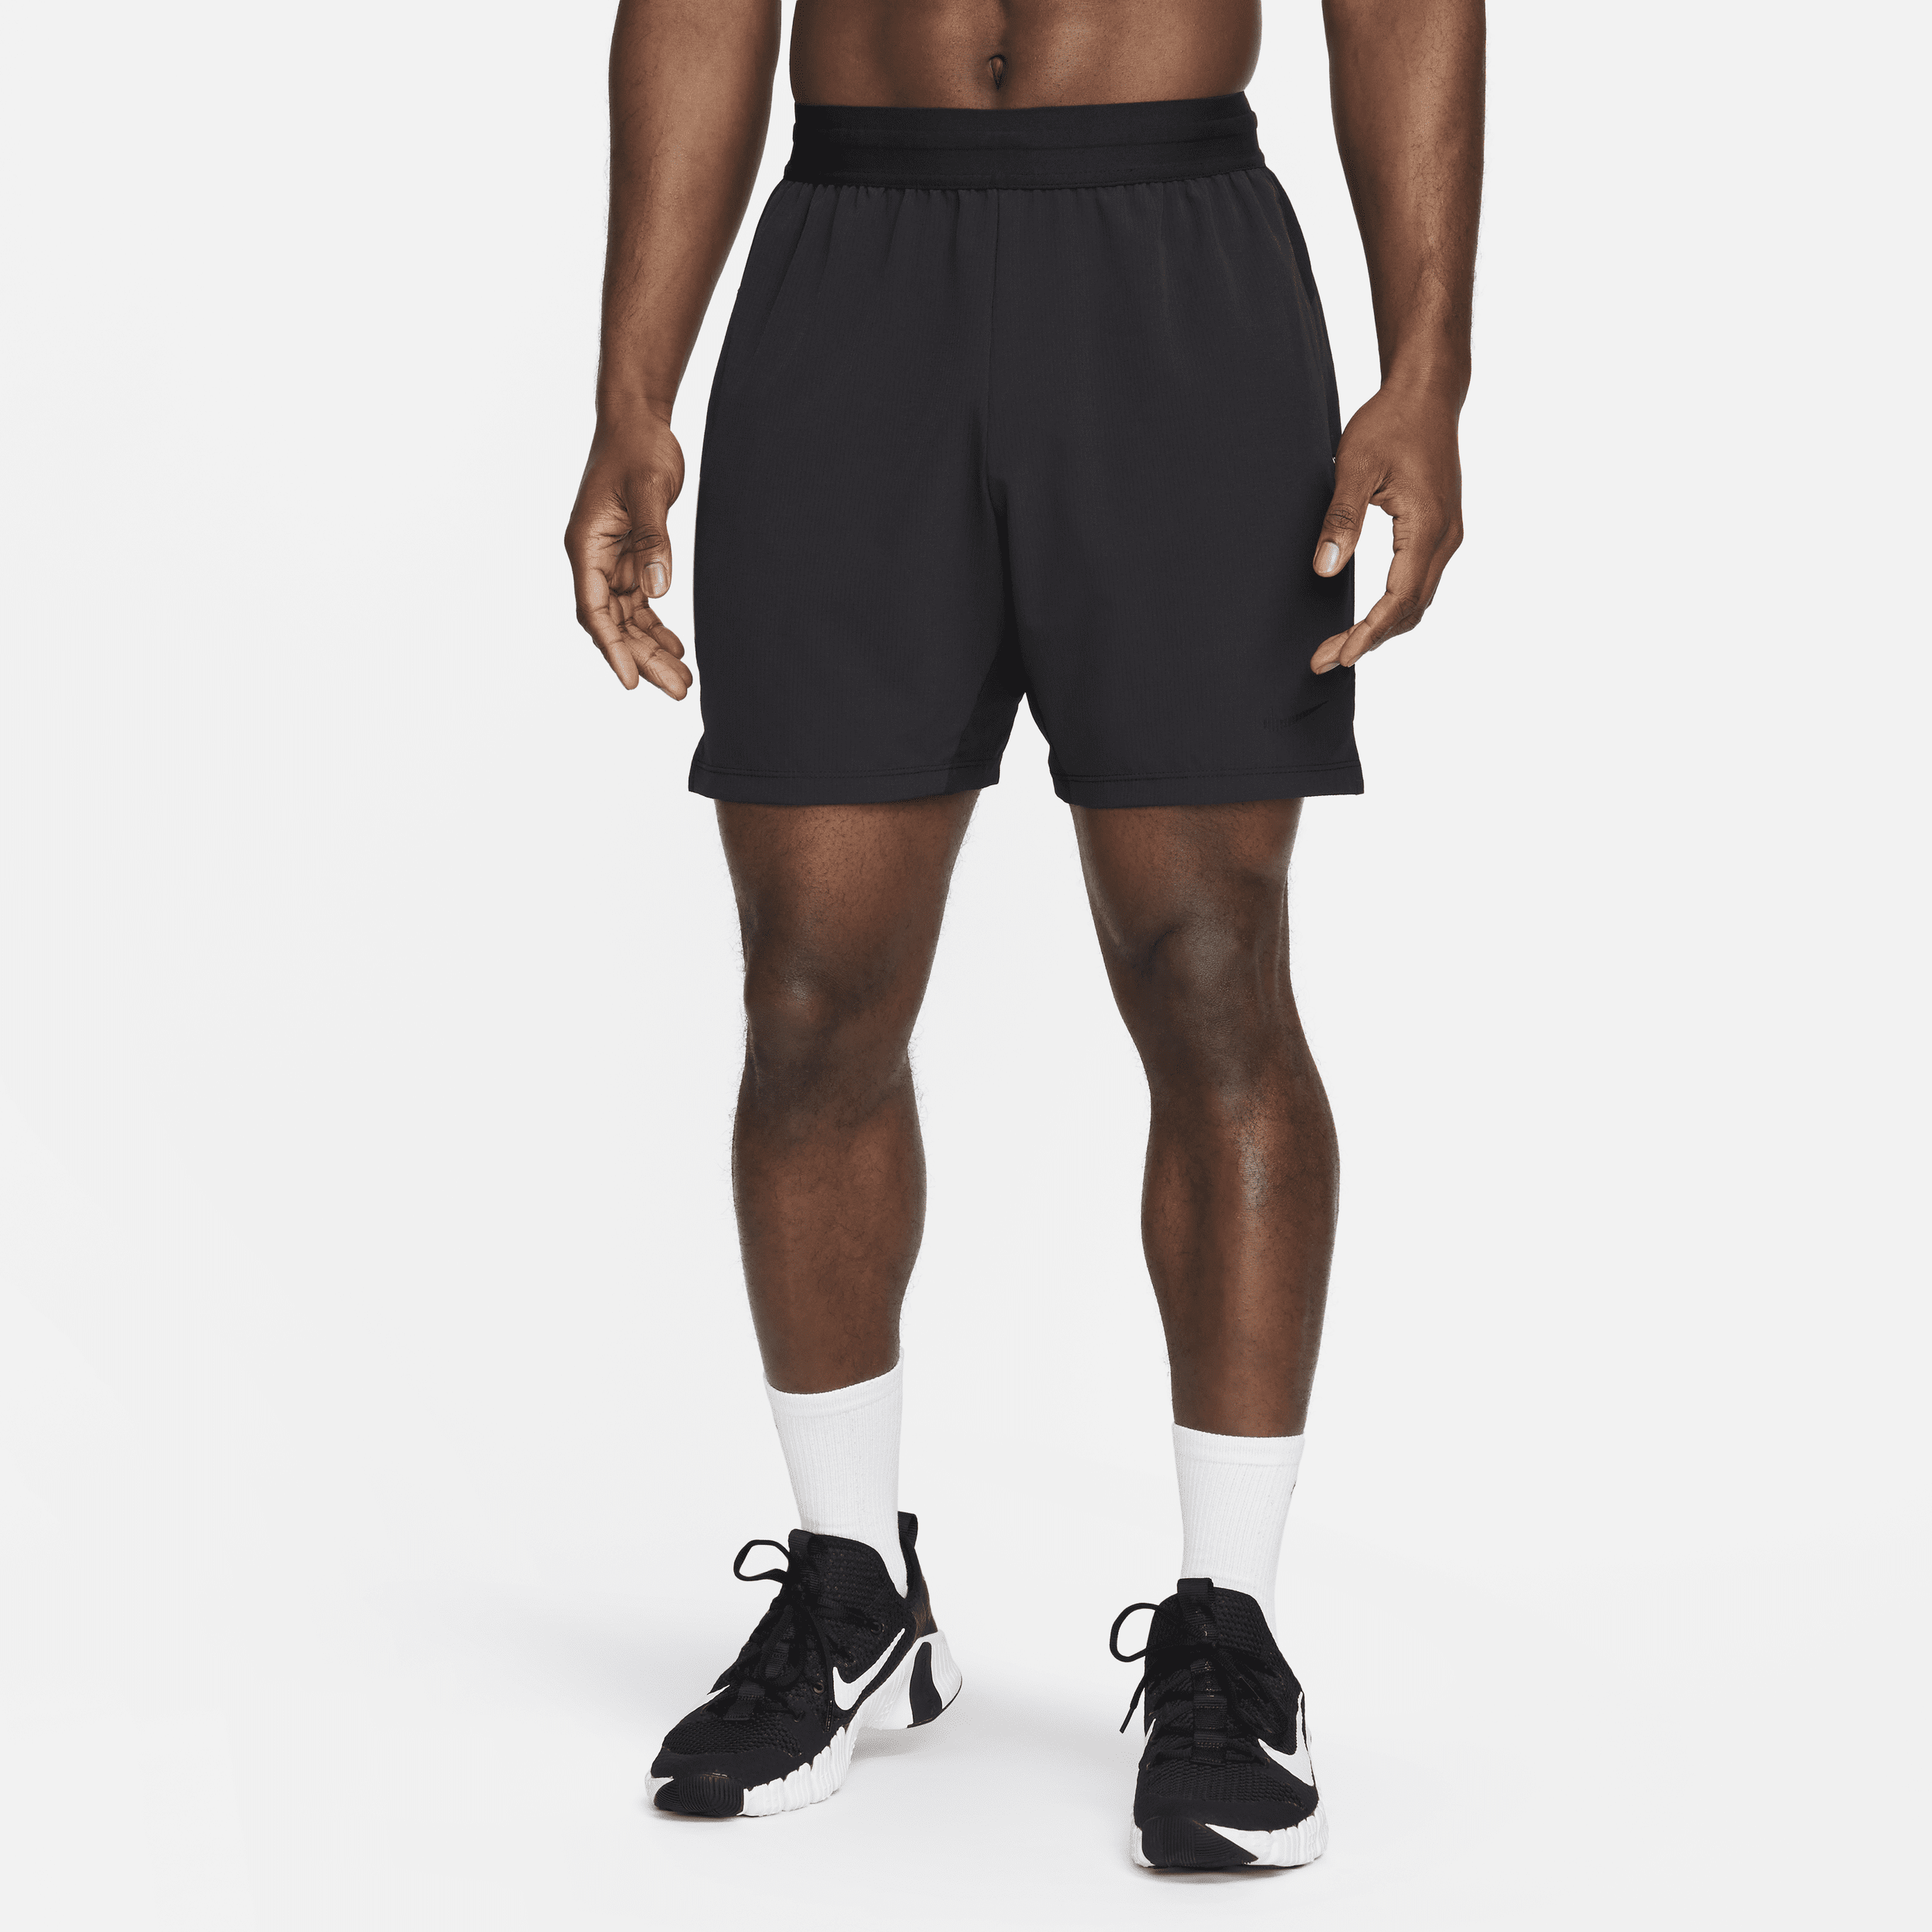 Shorts da fitness Dri-FIT non foderati 18 cm Nike Flex Rep 4.0 – Uomo - Nero